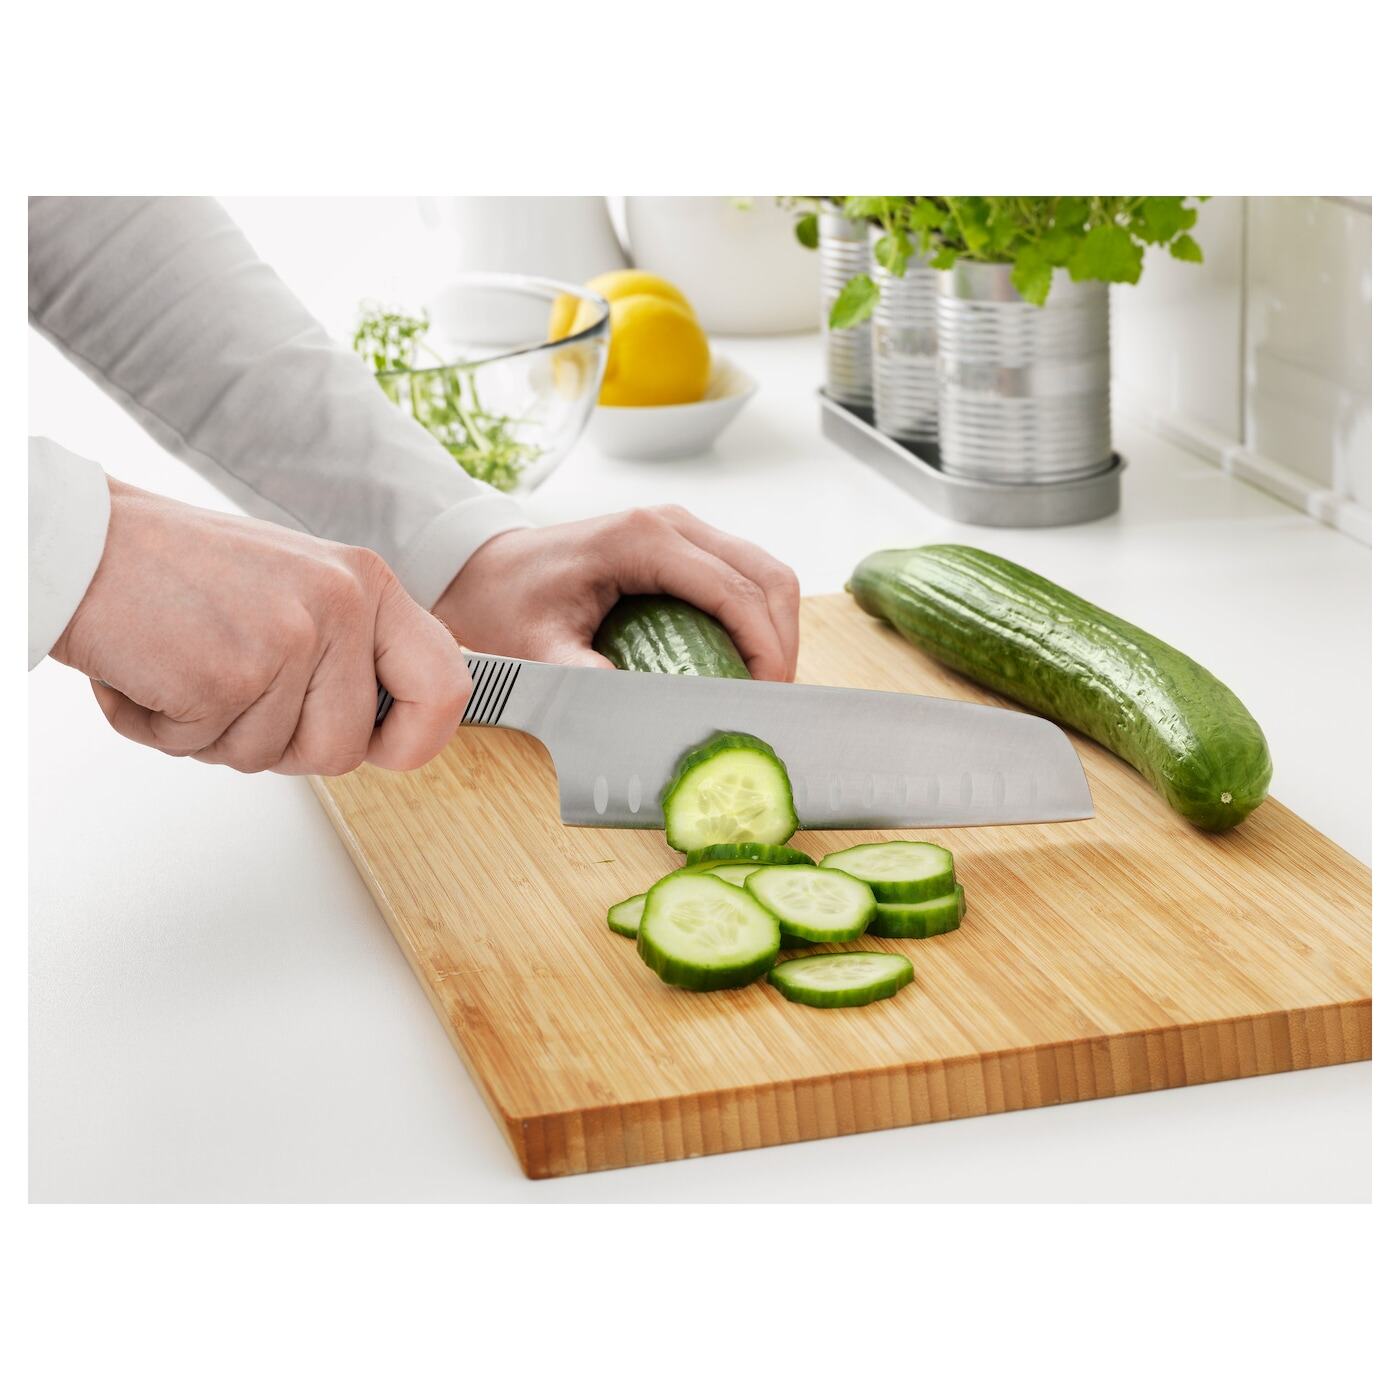 [ส่งฟรี ] มีดหั่นผัก, สแตนเลส 16 ซม. Vegetable knife, stainless steel 16 cm มีดทำครัว ชุดมีดทำครัว มีดหั่นสเต็ก มีดหั่นเนื้อหมู มีดหั่นของ โปรโมชั่นสุดคุ้ม โค้งสุดท้าย คุณภาพดี